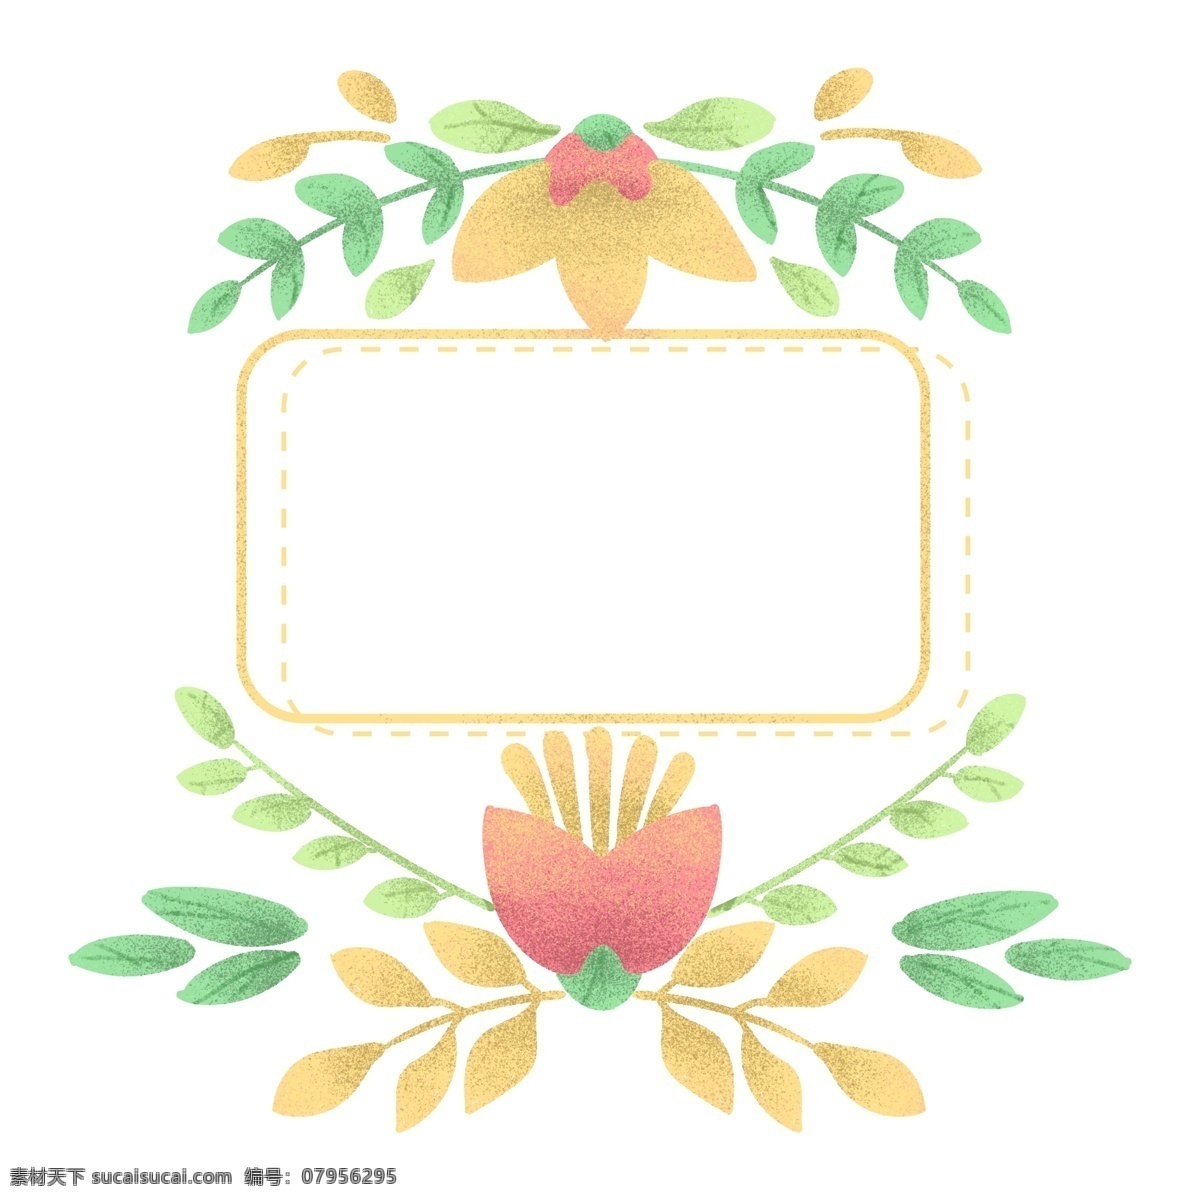 婚礼鲜花 边框 插画 婚礼边框 鲜花边框 植物边框 漂亮的边框 黄色的叶子 植物装饰 手绘边框